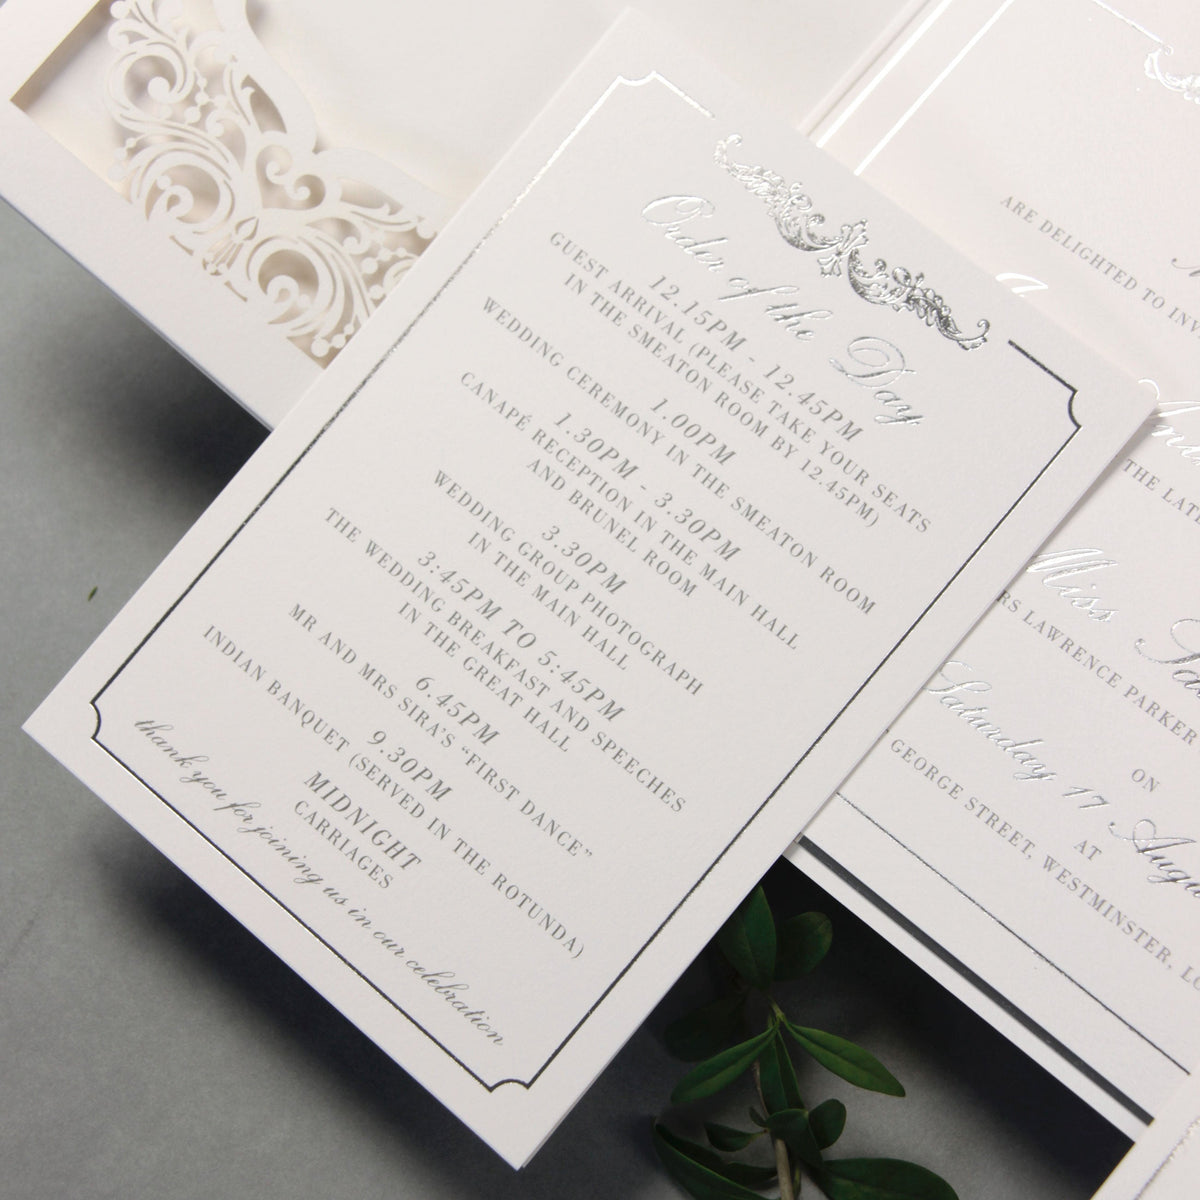 Suite plegable de bolsillo de lujo Siver Foil para el día de la boda, Rsvp, suite de invitación de tarjeta de información con bolsillo cortado con láser, guión de caligrafía